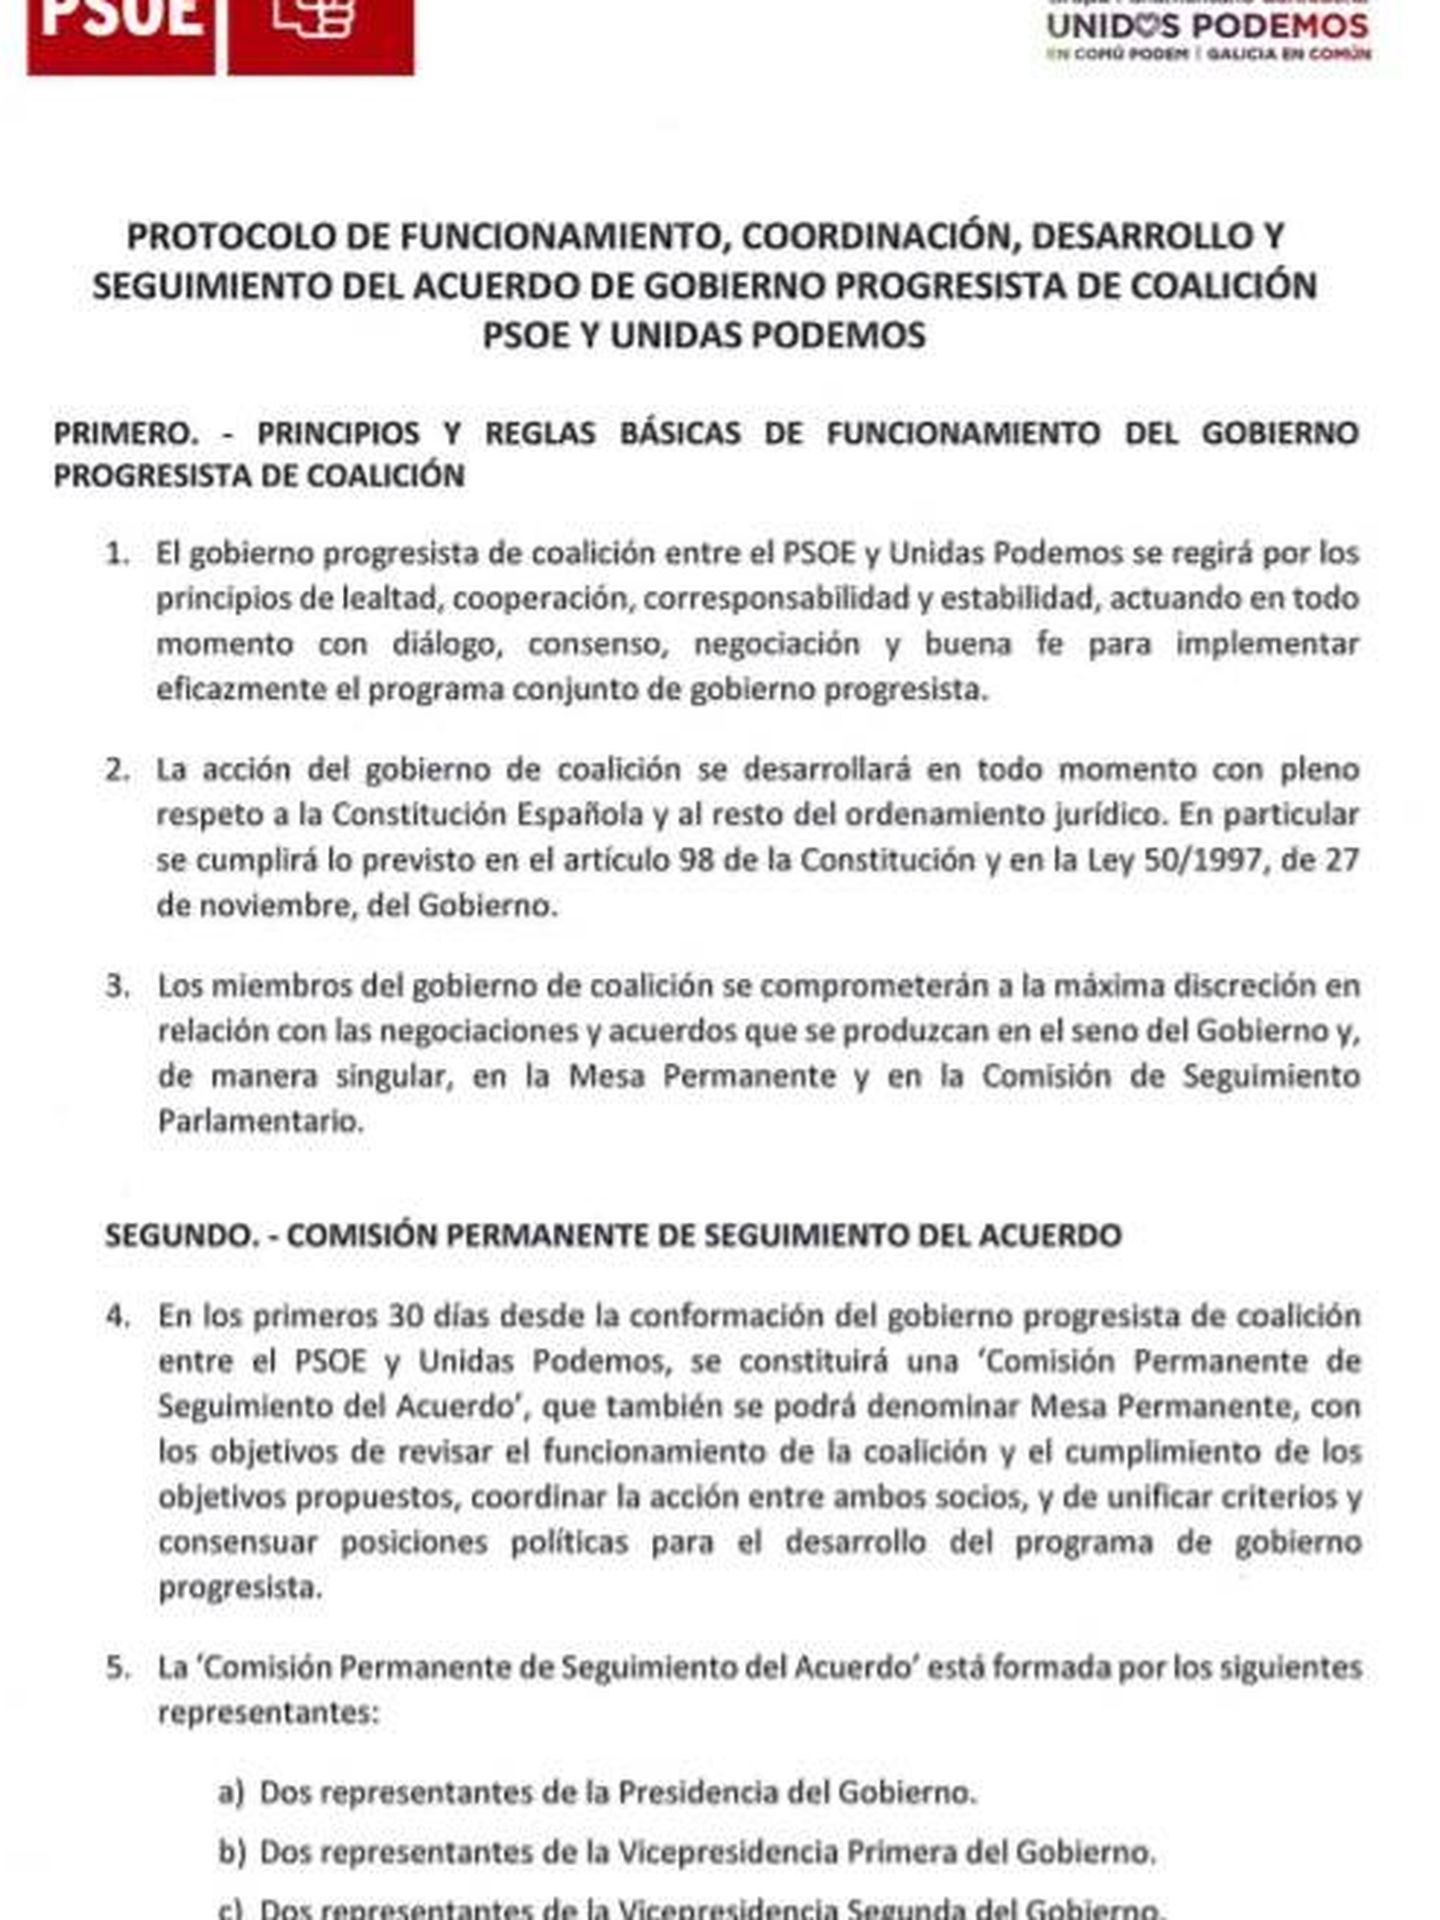 Consulte aquí en PDF el protocolo de coordinación y funcionamiento del acuerdo de Gobierno de coalición de PSOE y Unidas Podemos. 